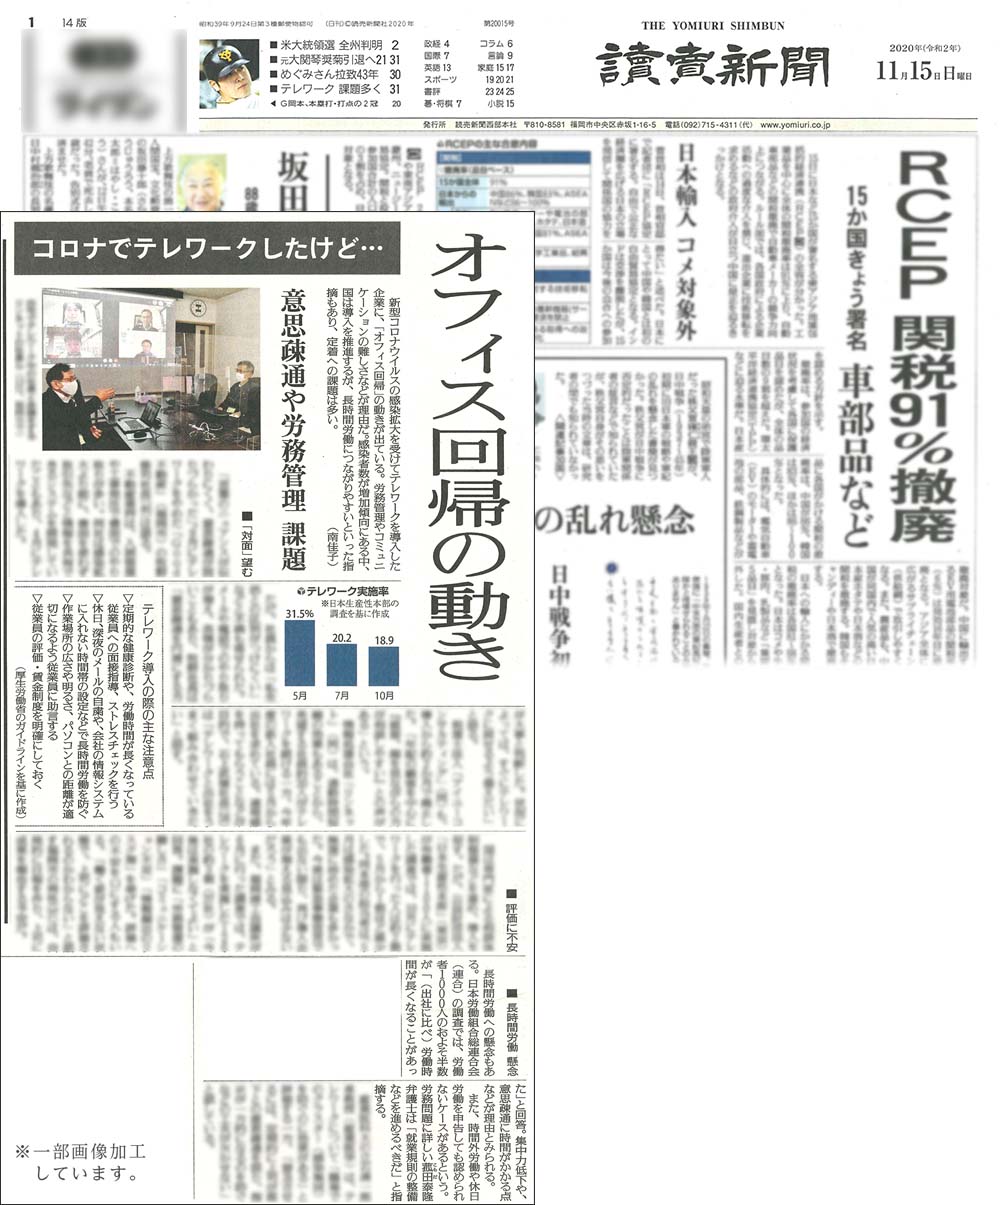 当事務所代表弁護士 菰田泰隆が「読売新聞」の取材を受け、記事が掲載されました